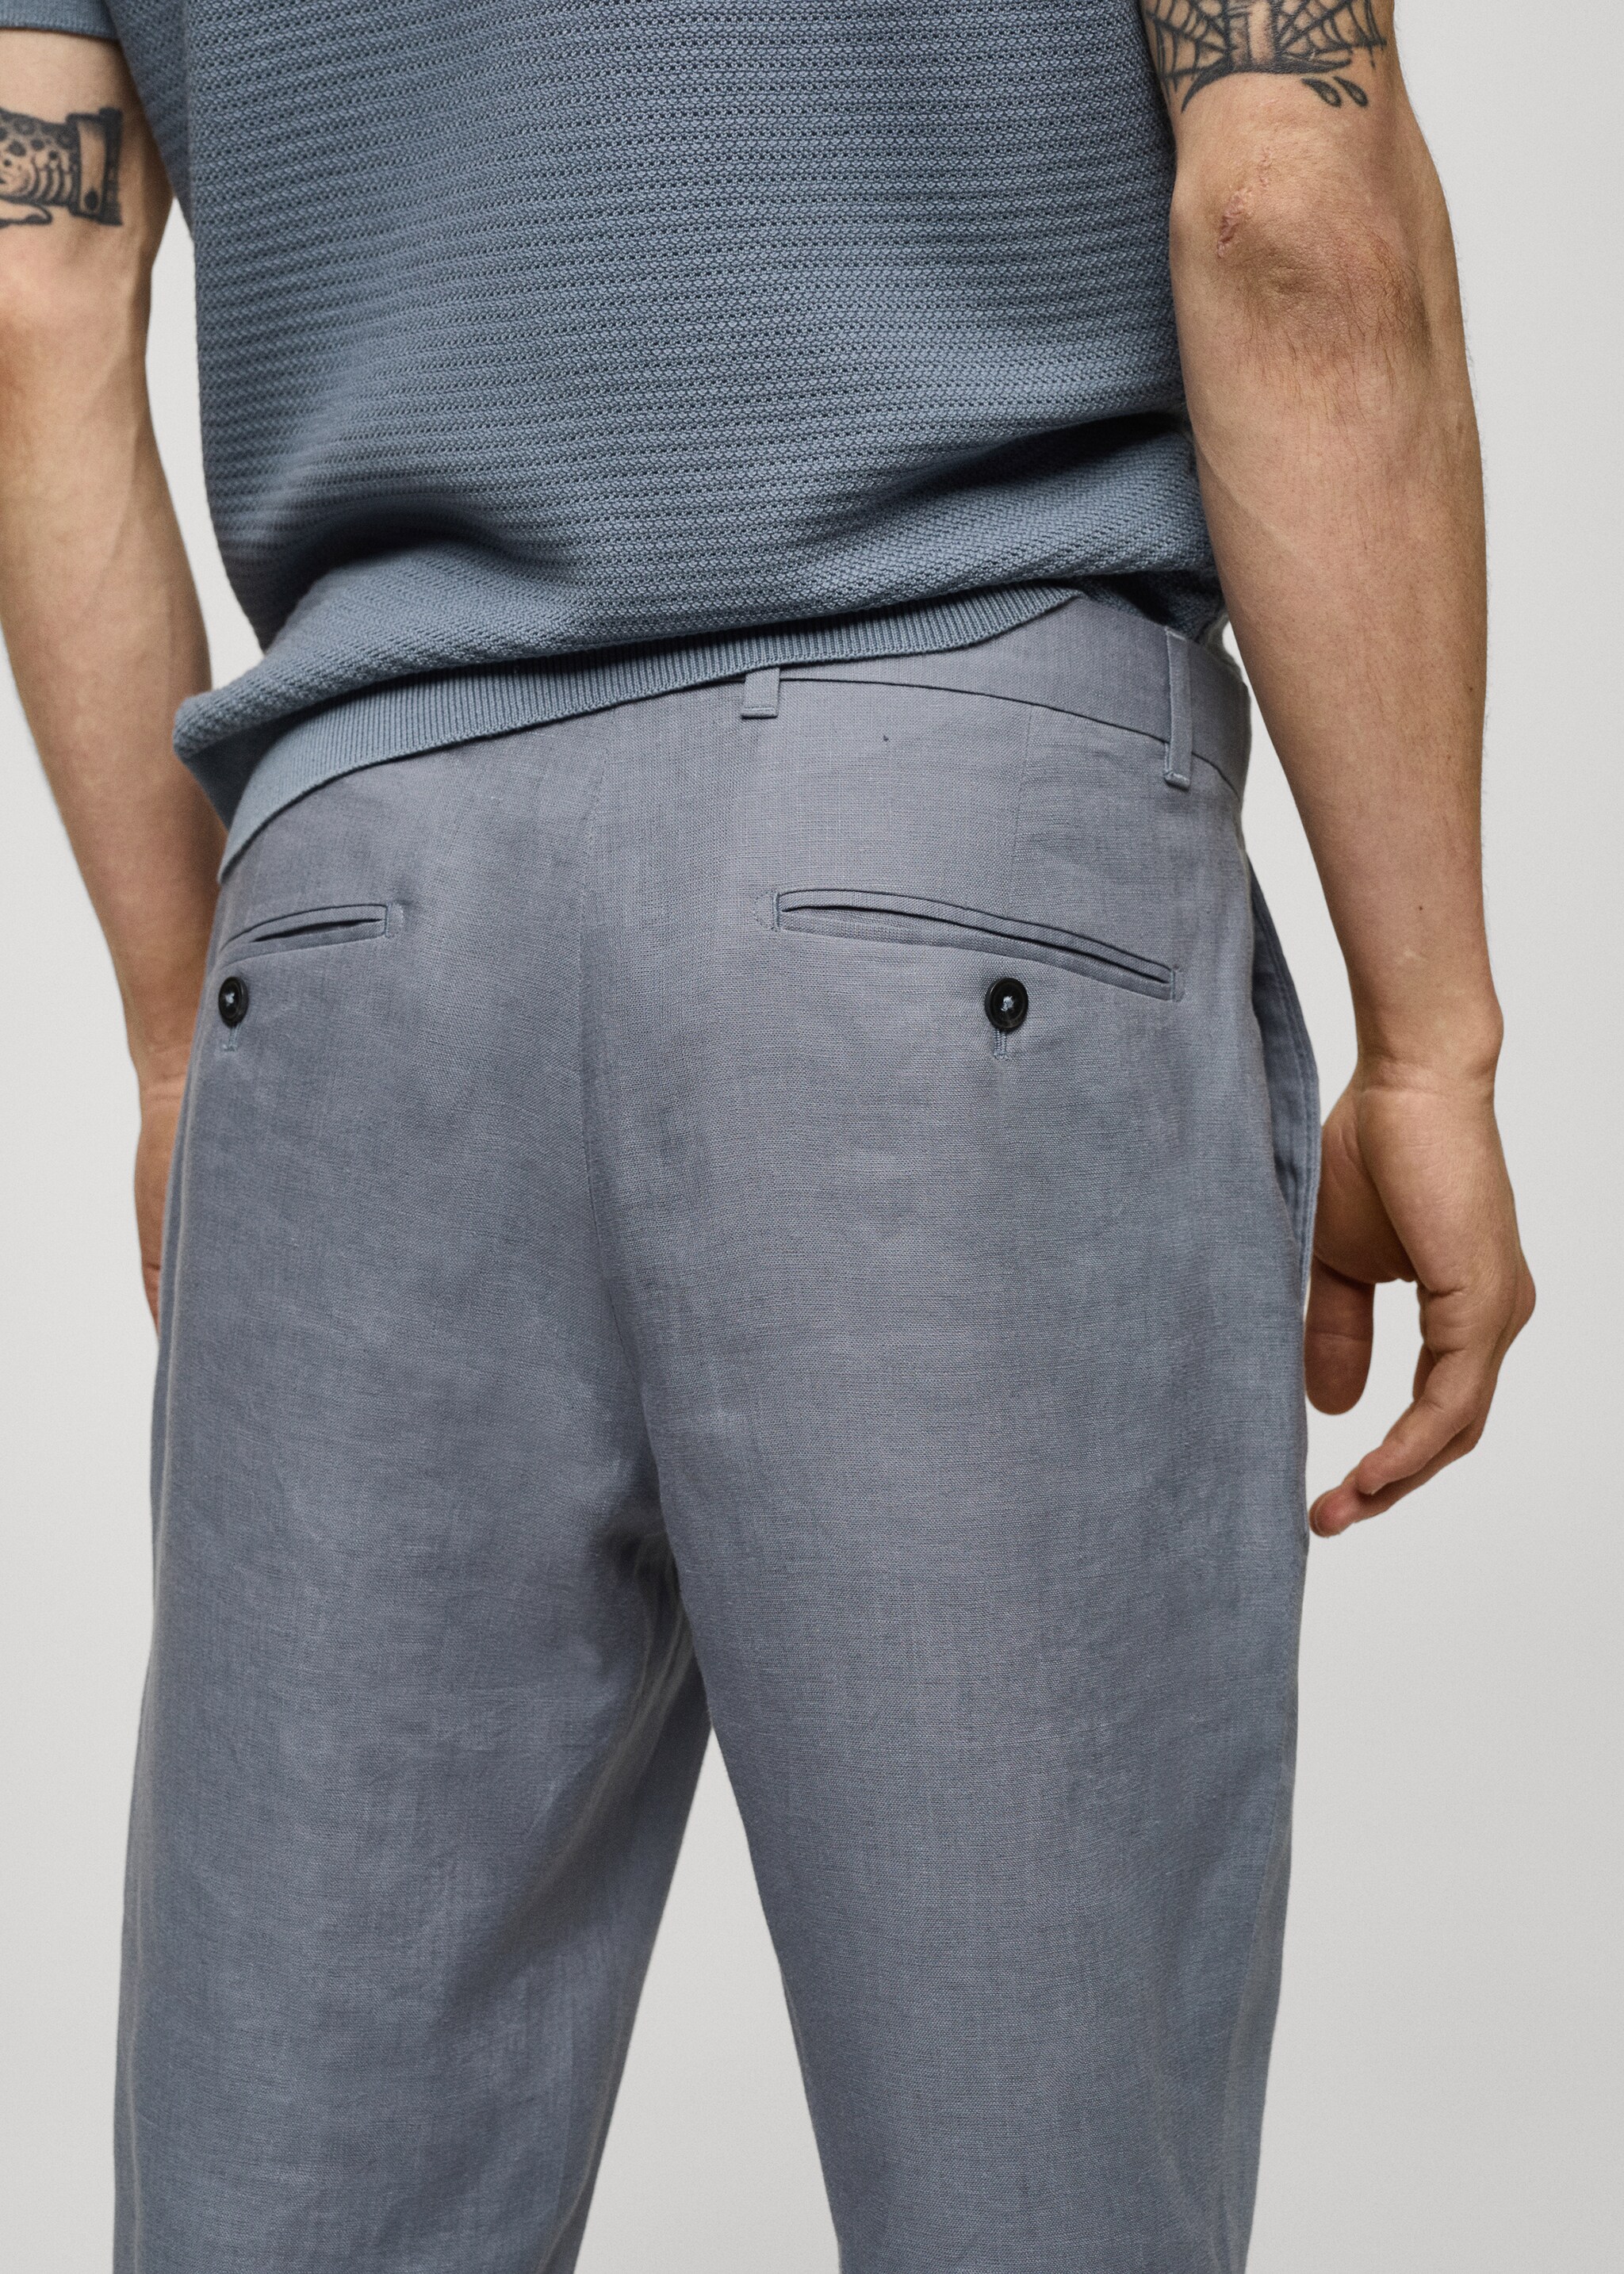 Pantalons 100% lli slim fit - Detall de l'article 6